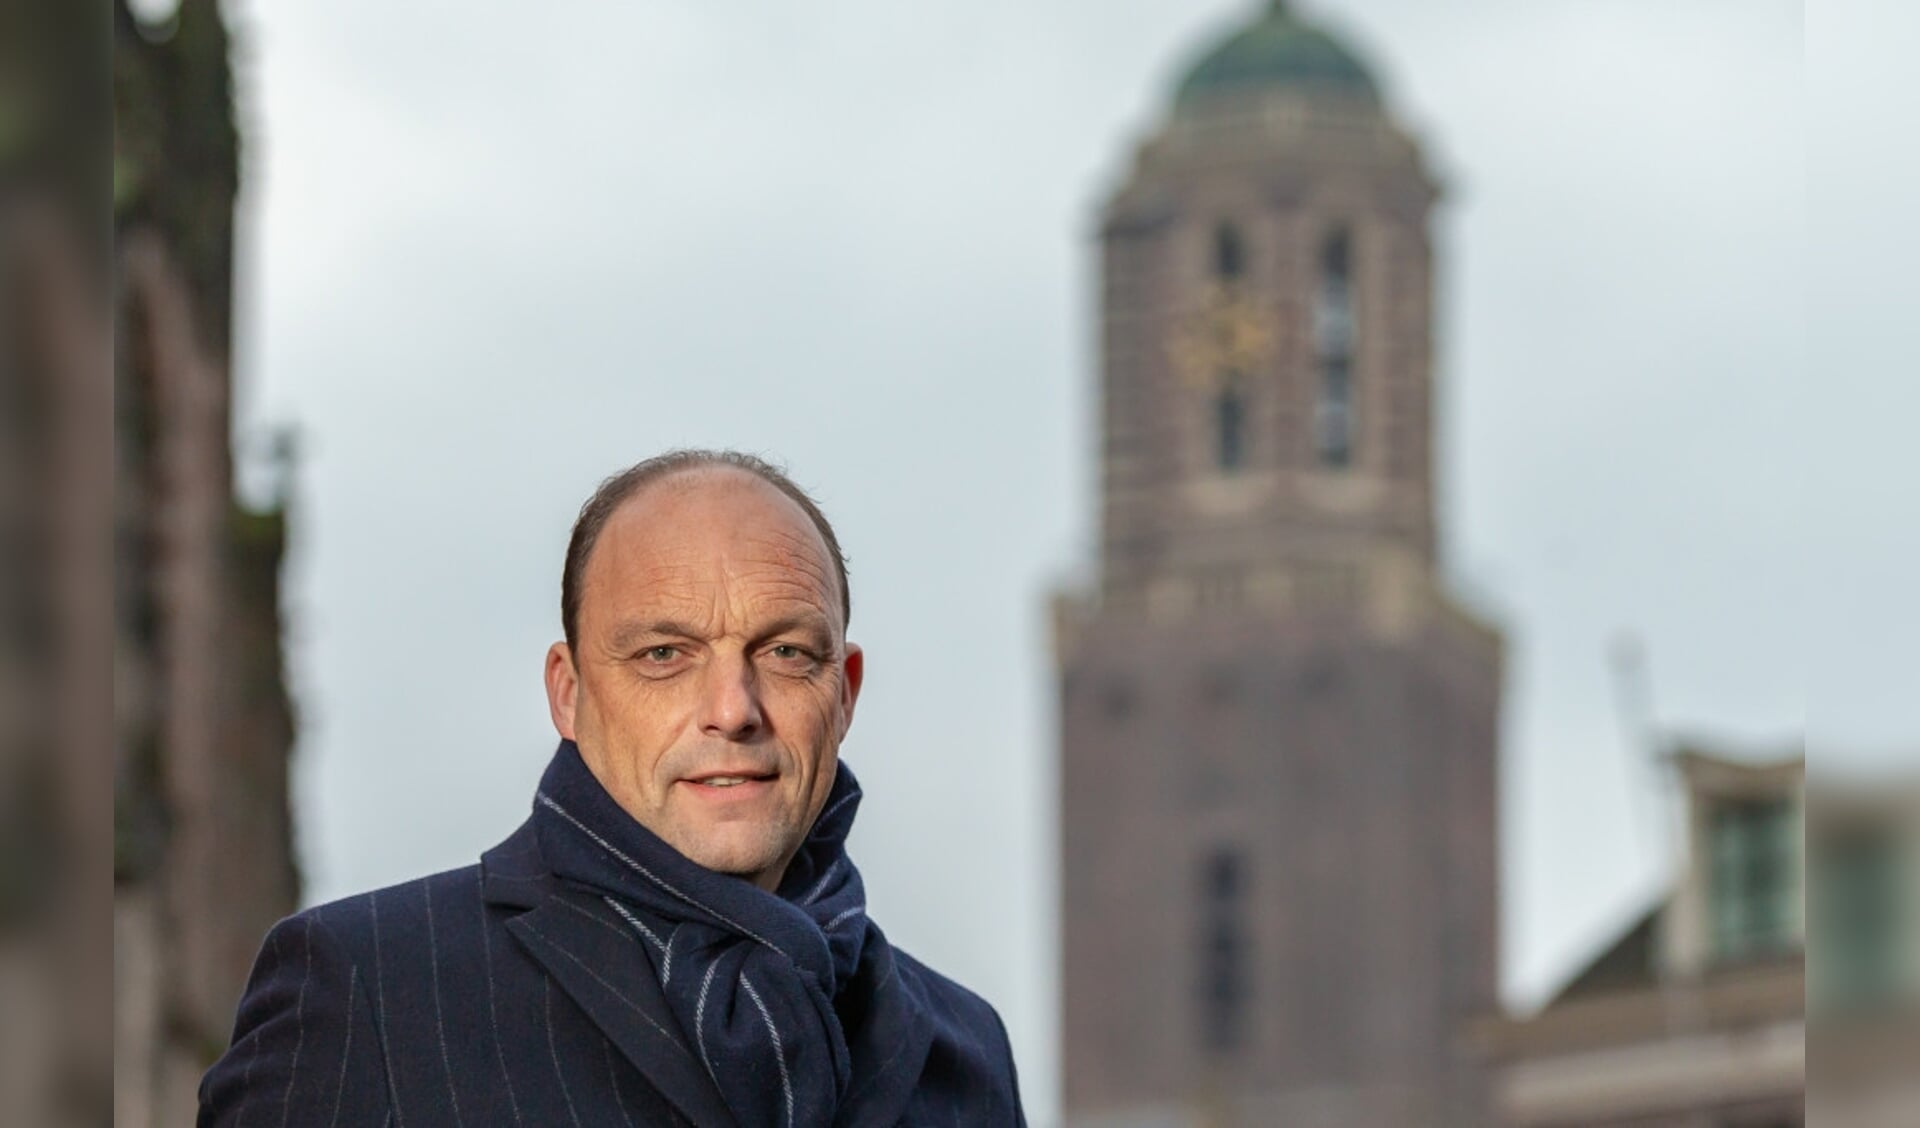  Burgemeester Peter Snijders van Zwolle